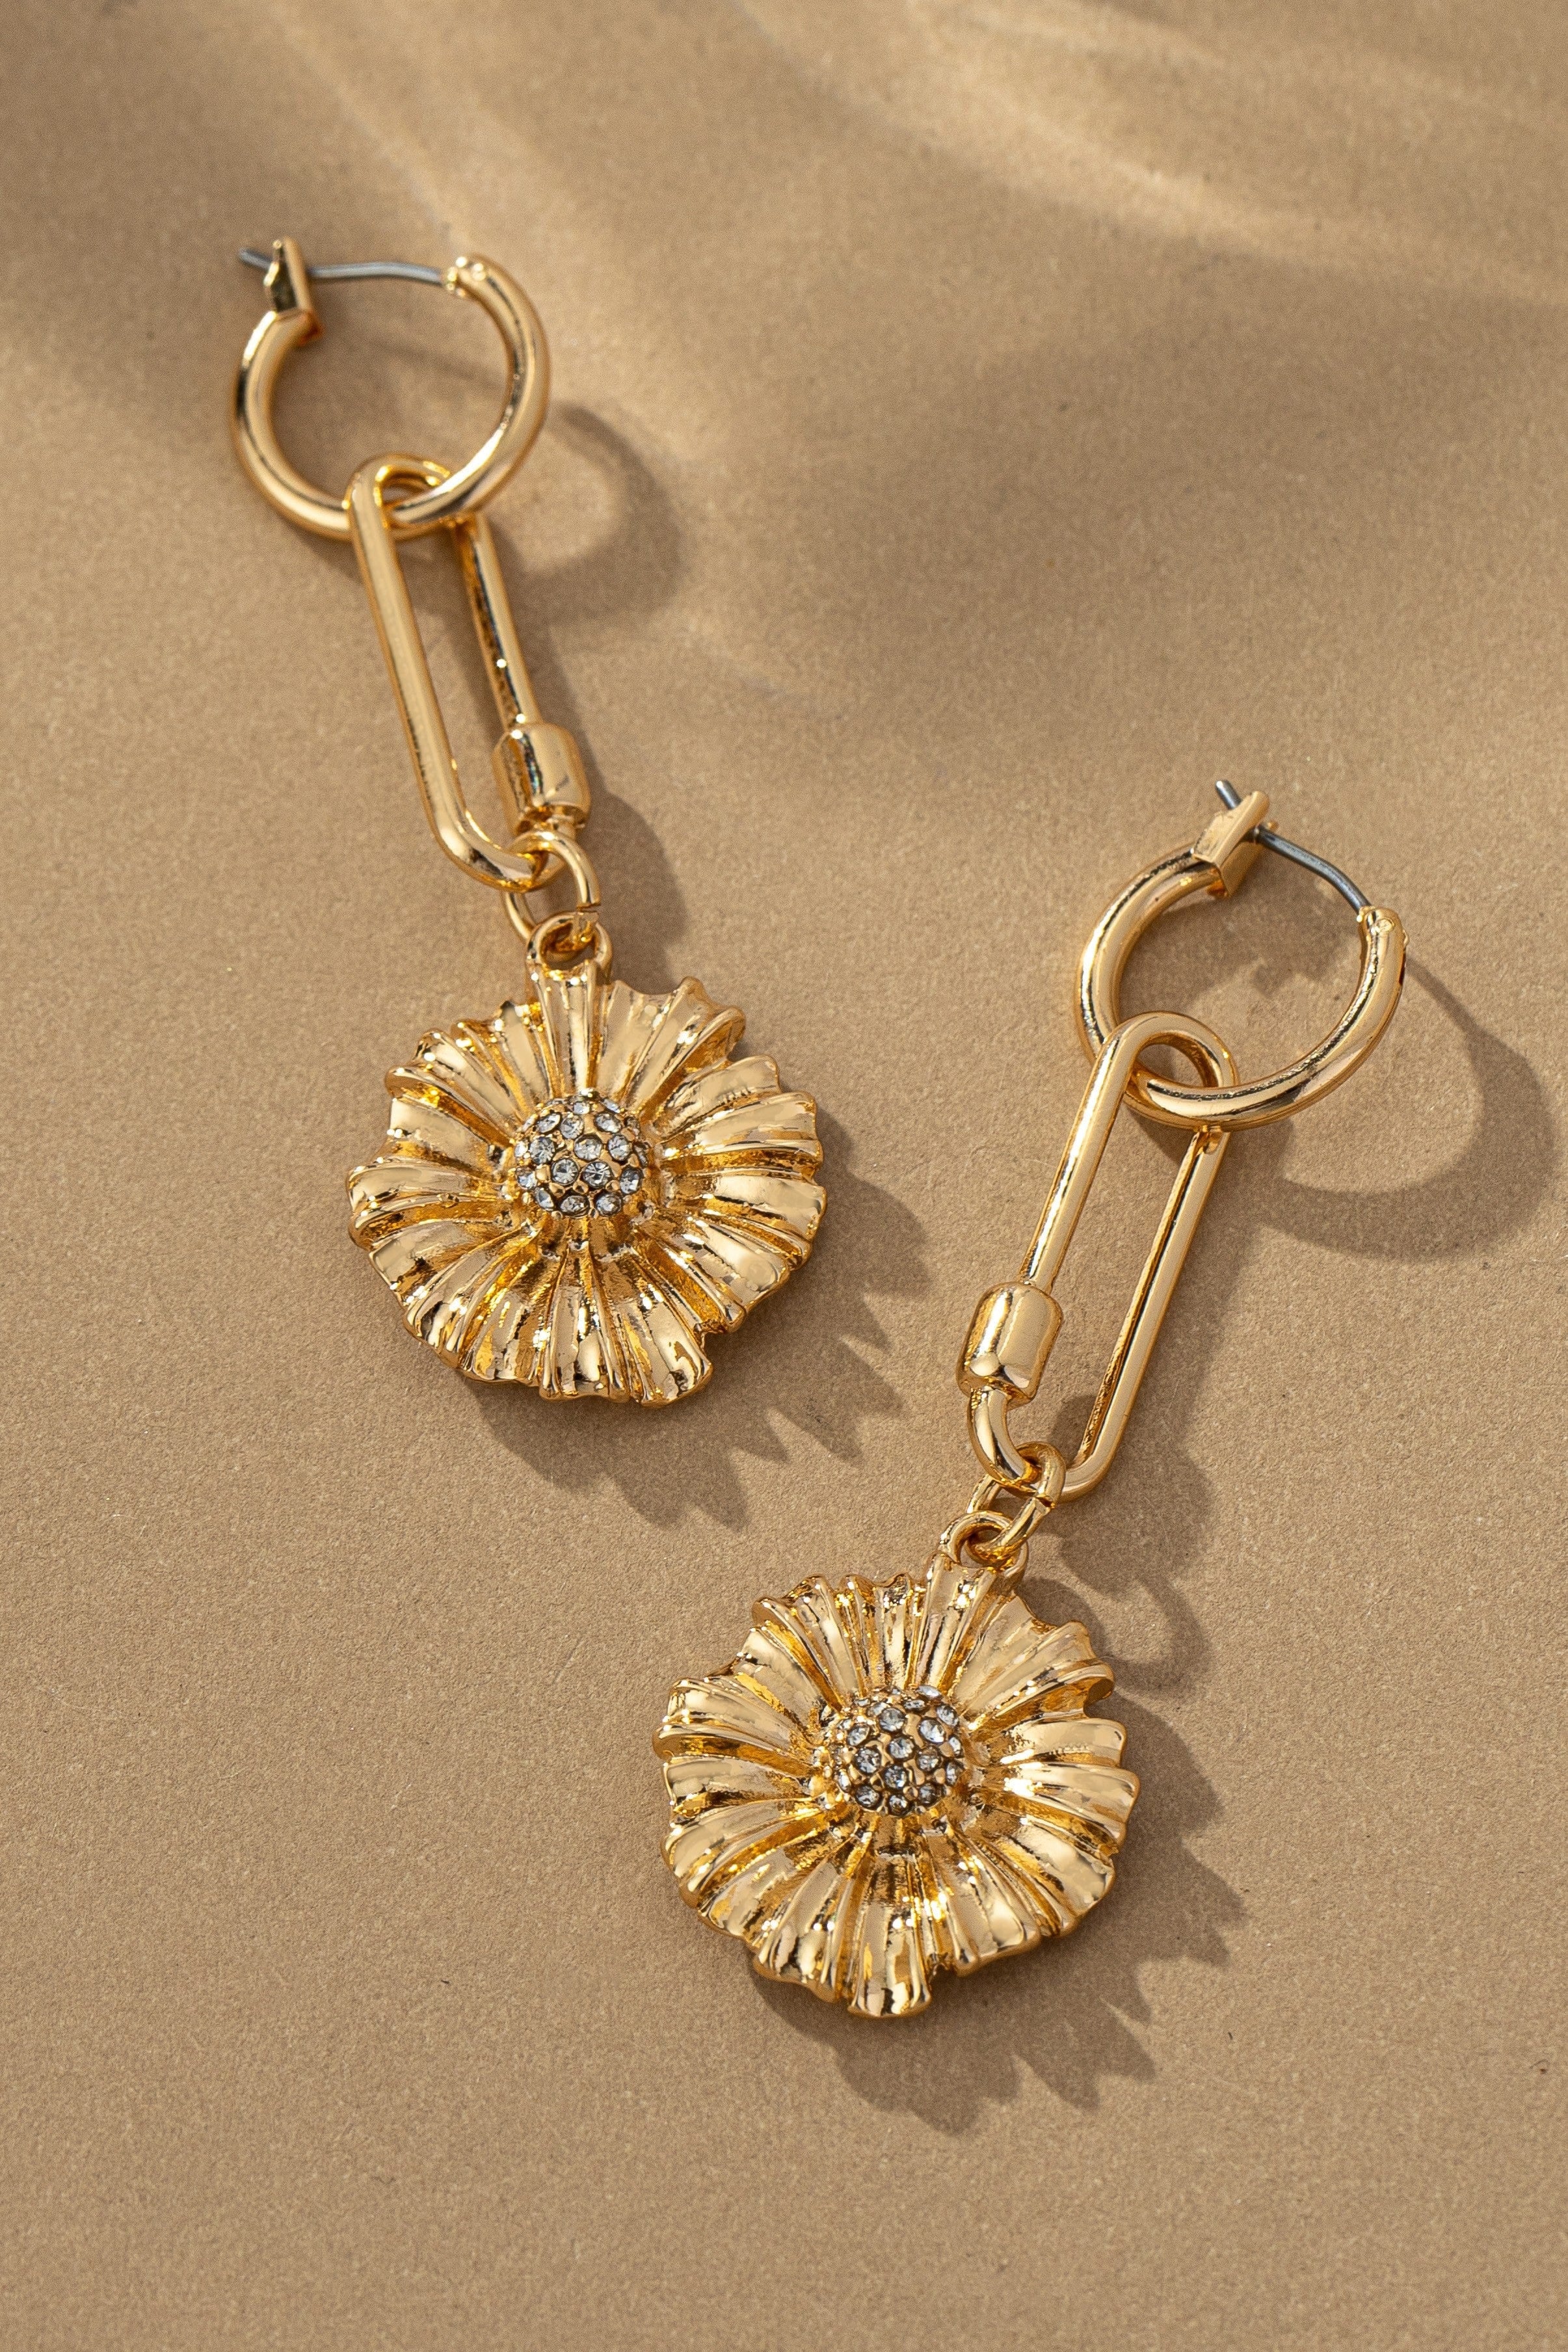 LA3accessories Jewelry - Earrings Oval Link Flower Drop Huggie Earrings In Gold 24575478